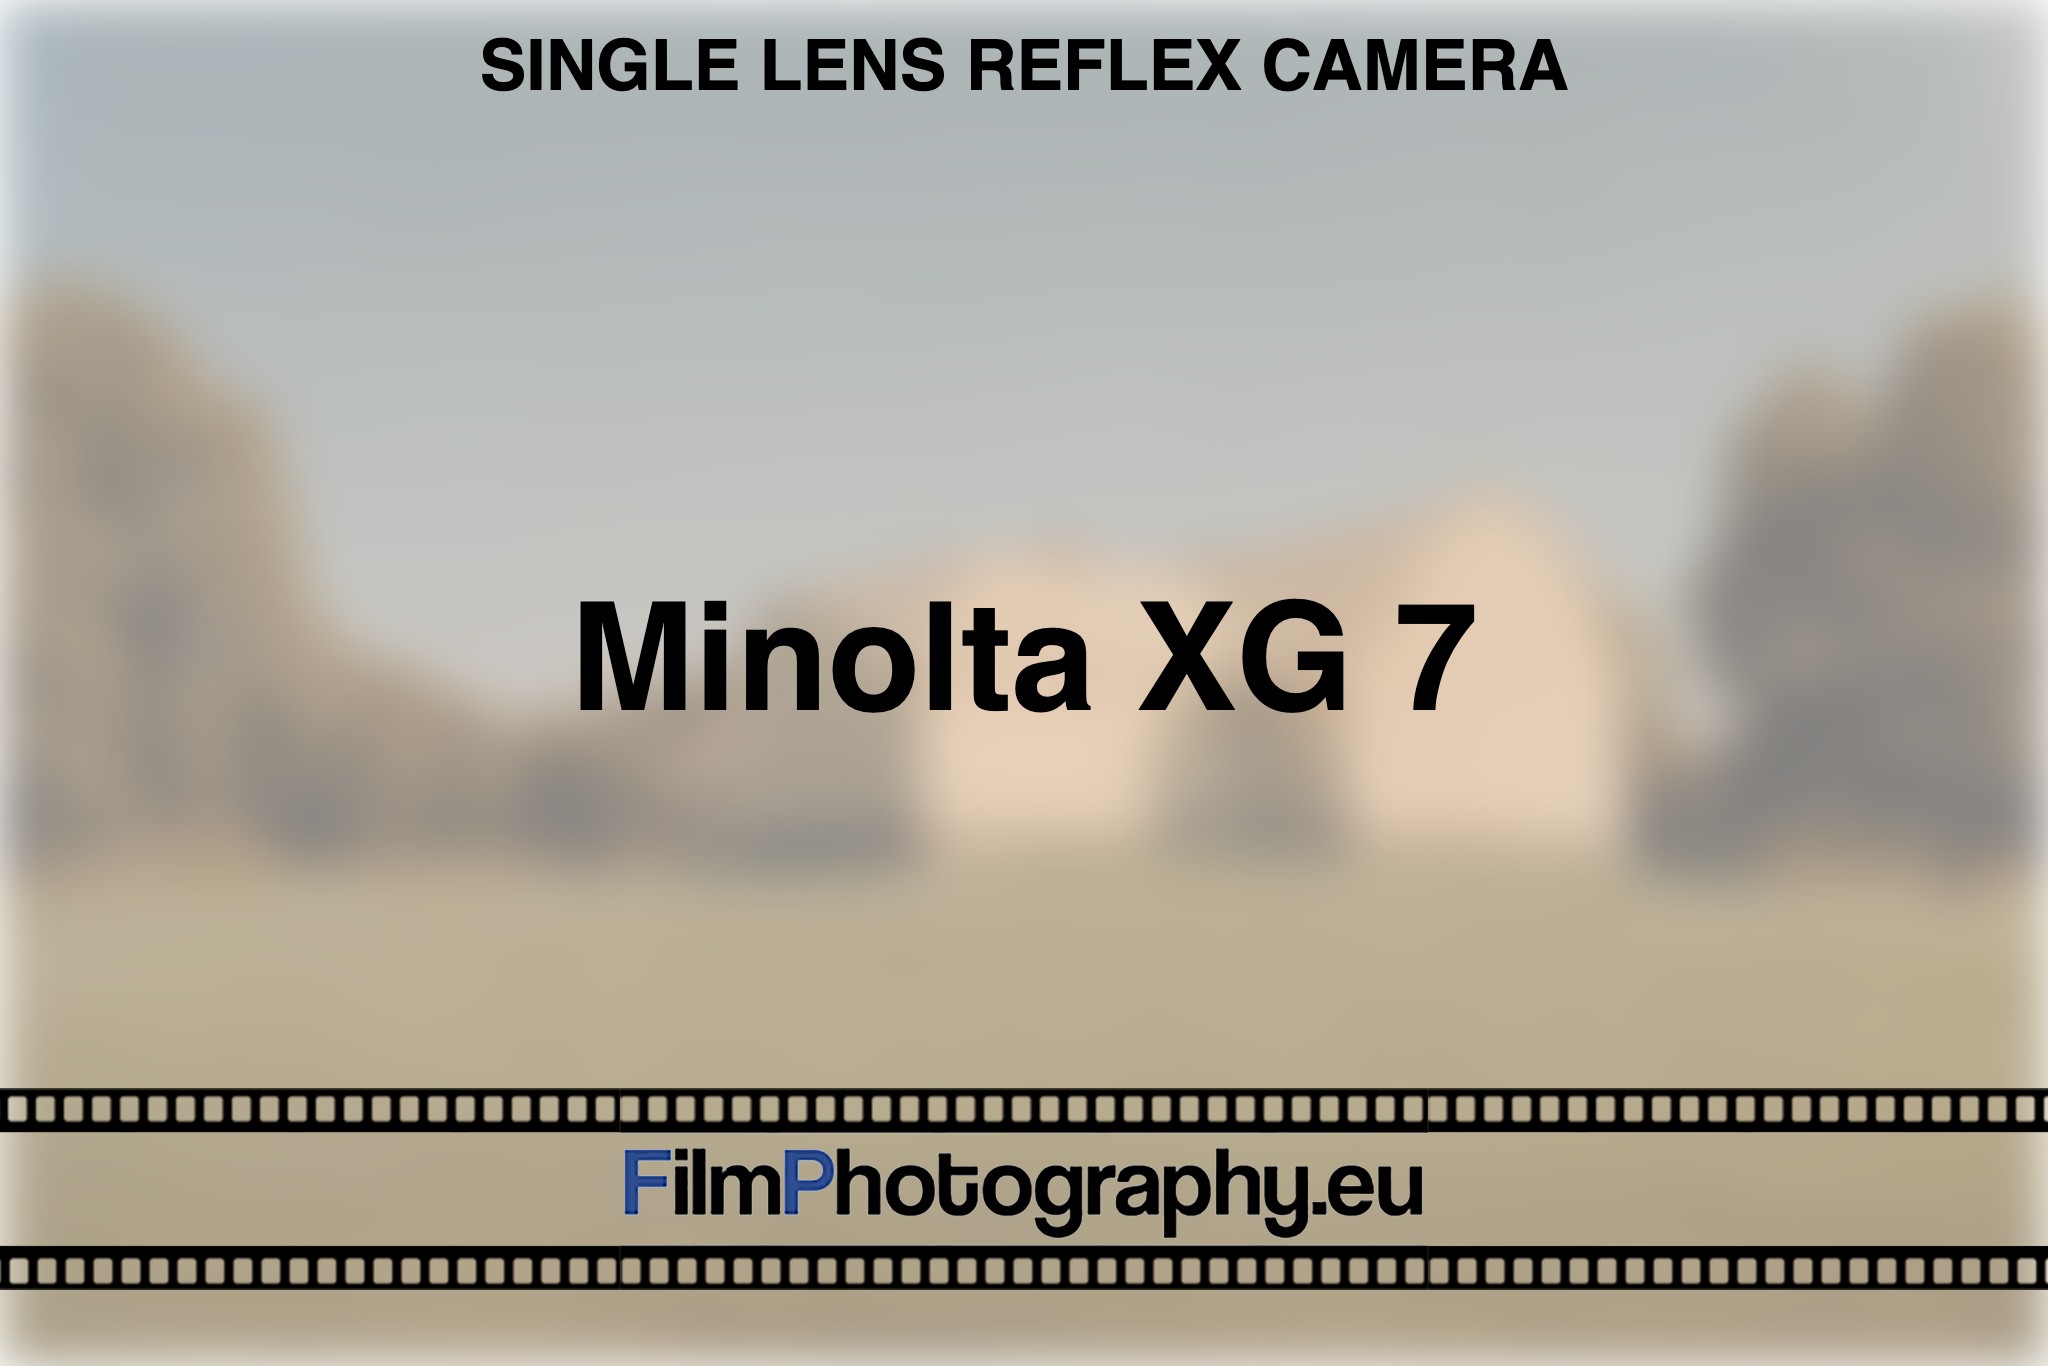 minolta-xg-7-single-lens-reflex-camera-bnv